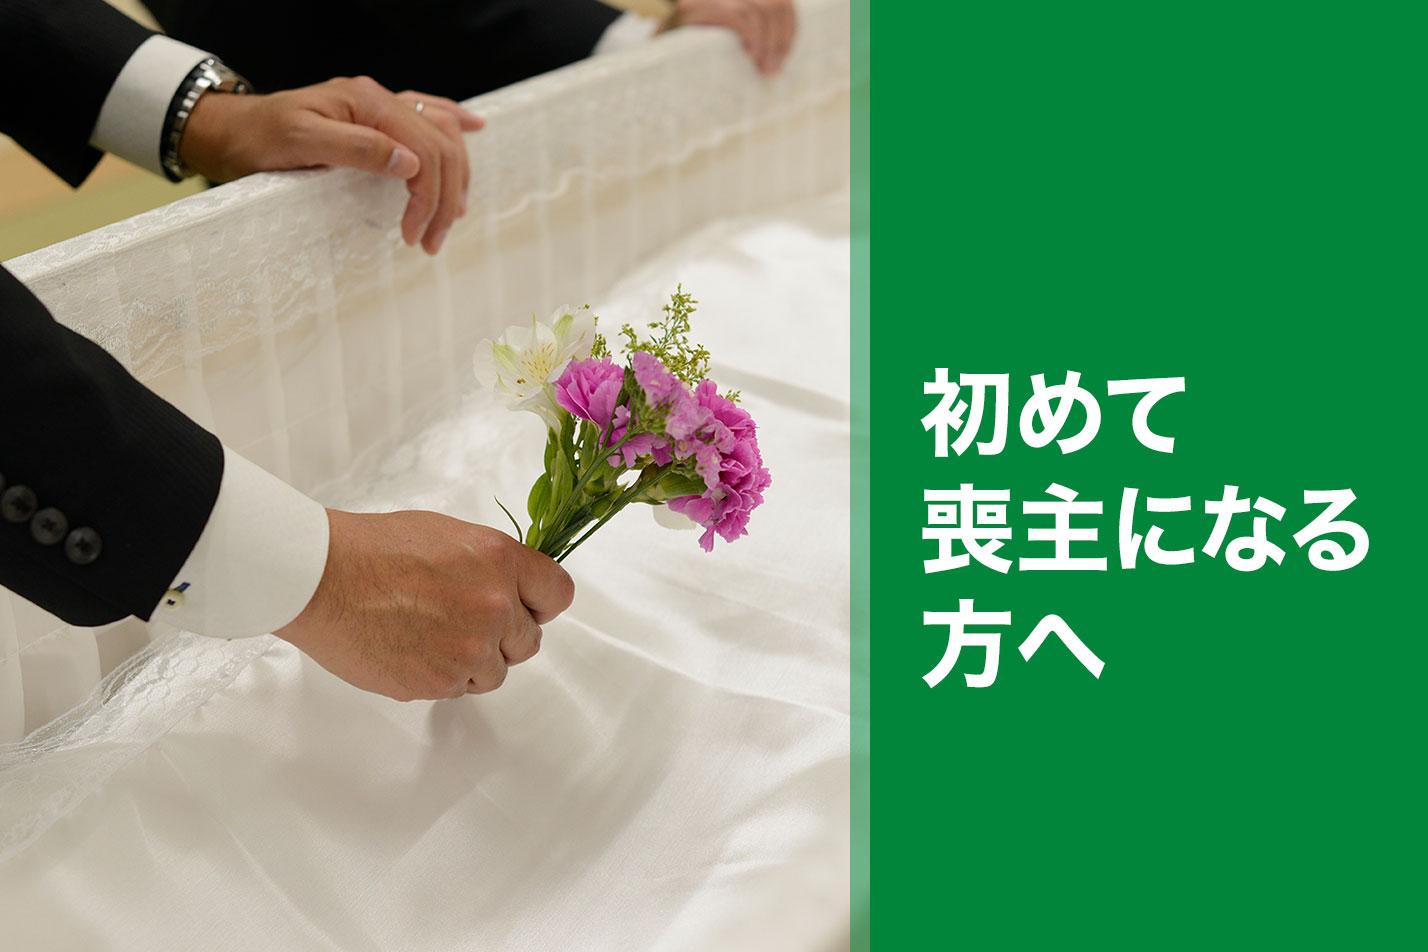  朝霞市ではじめての葬儀を行う喪主様へのイメージ画像